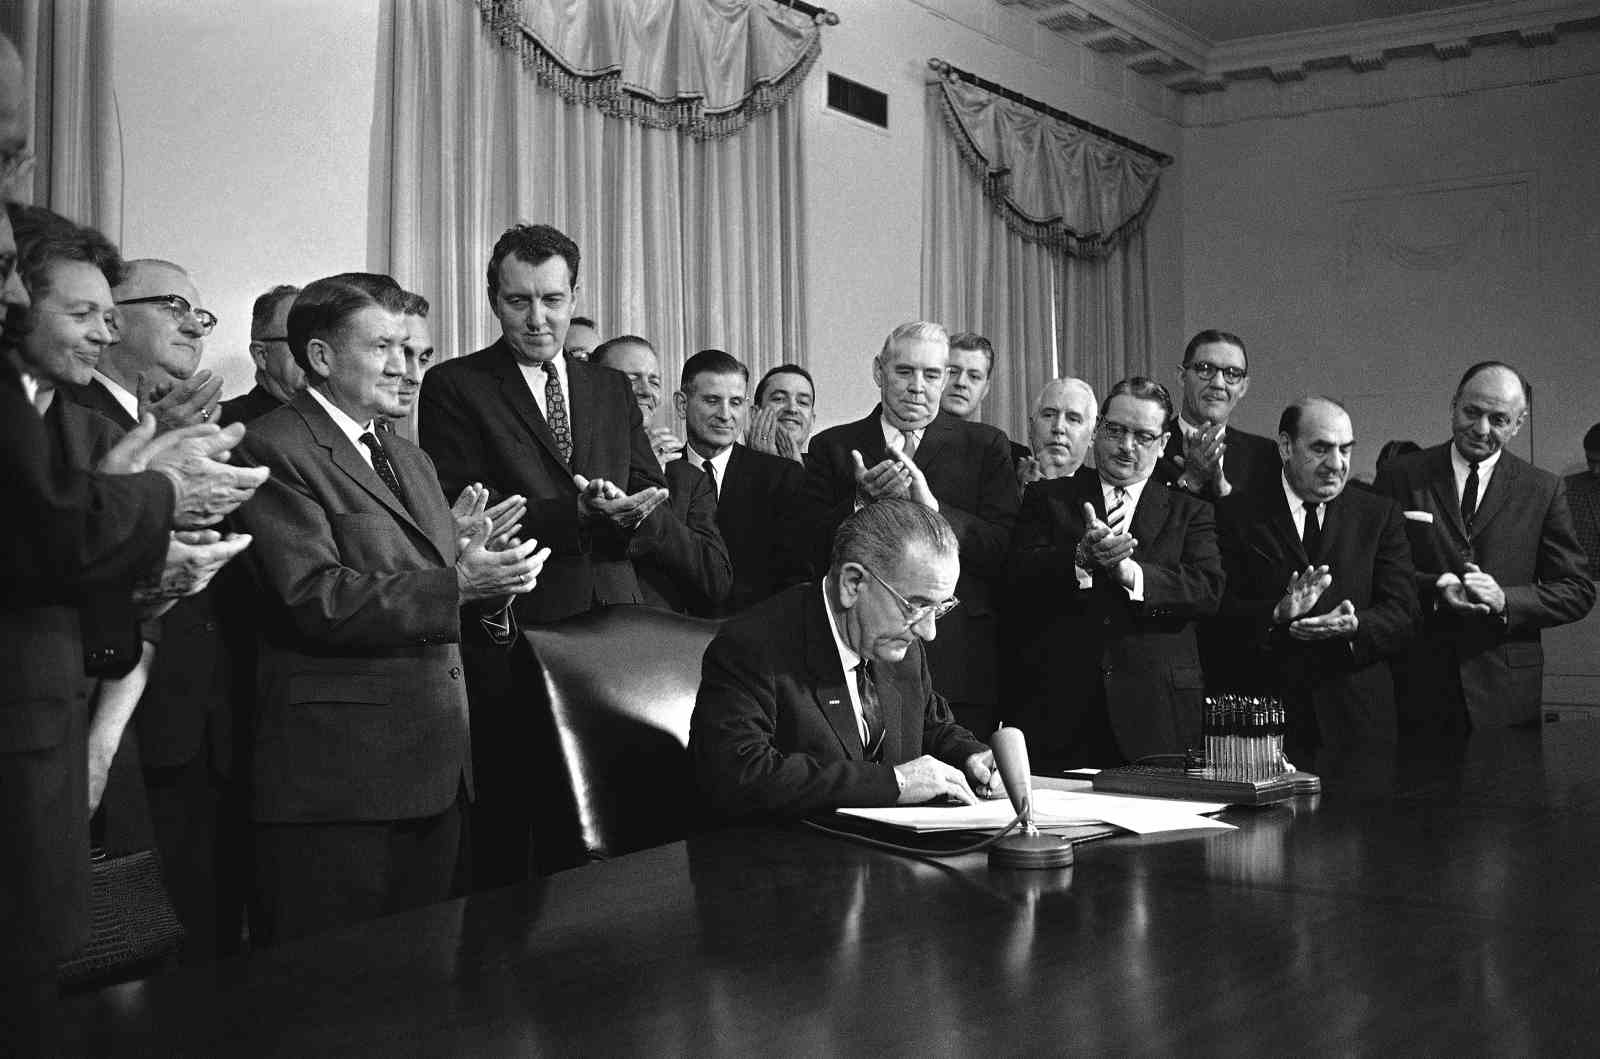 une photo en noir et blanc du président signant un document